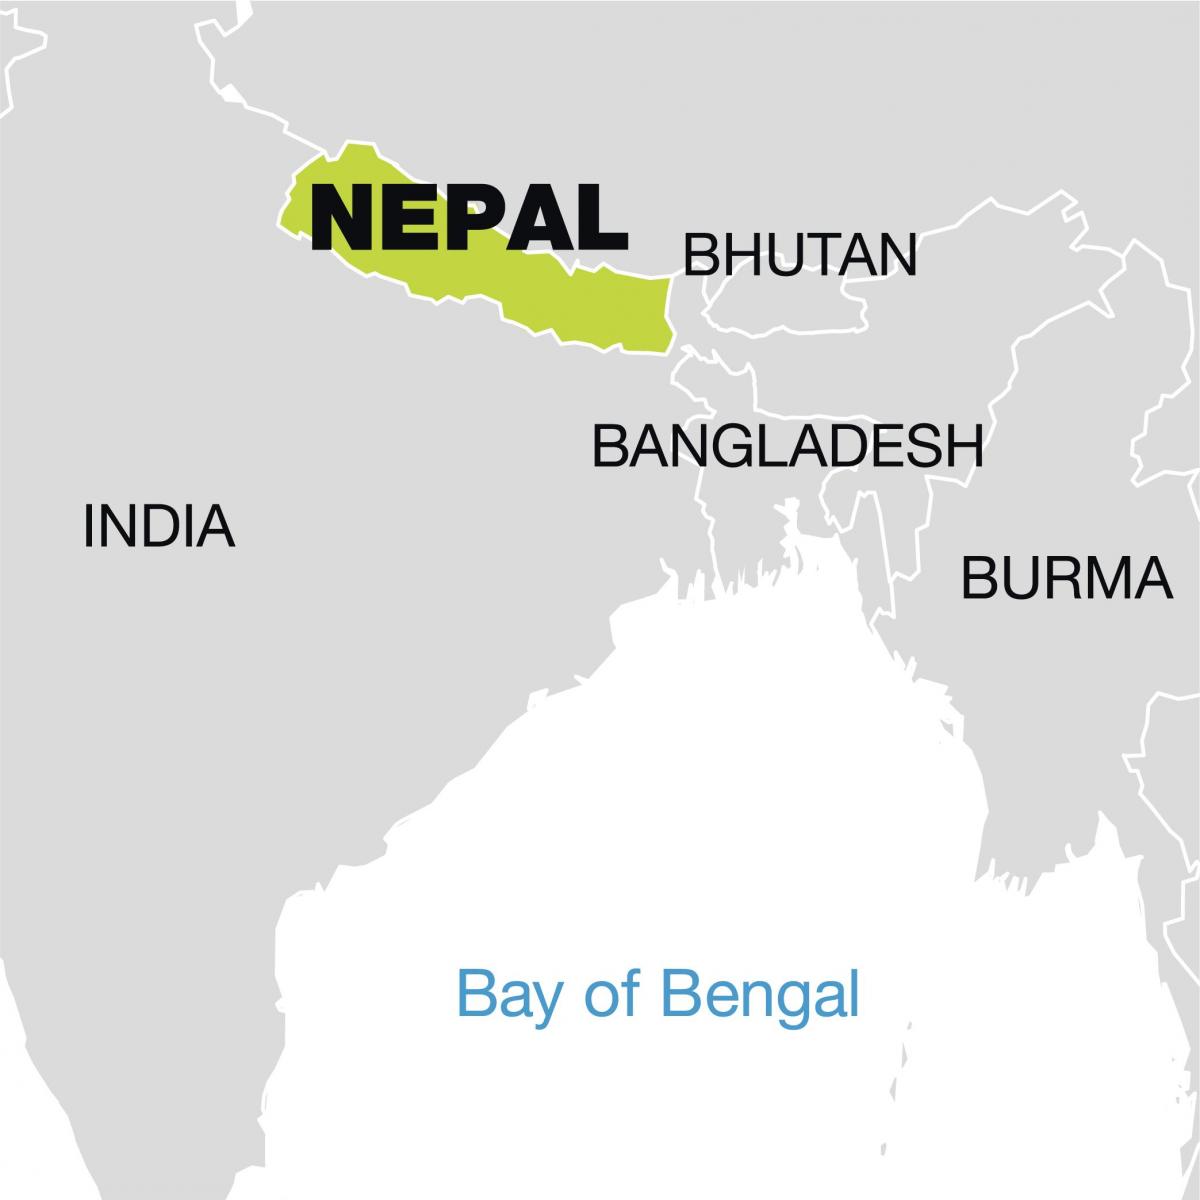 mapa do mundo mostrando nepal